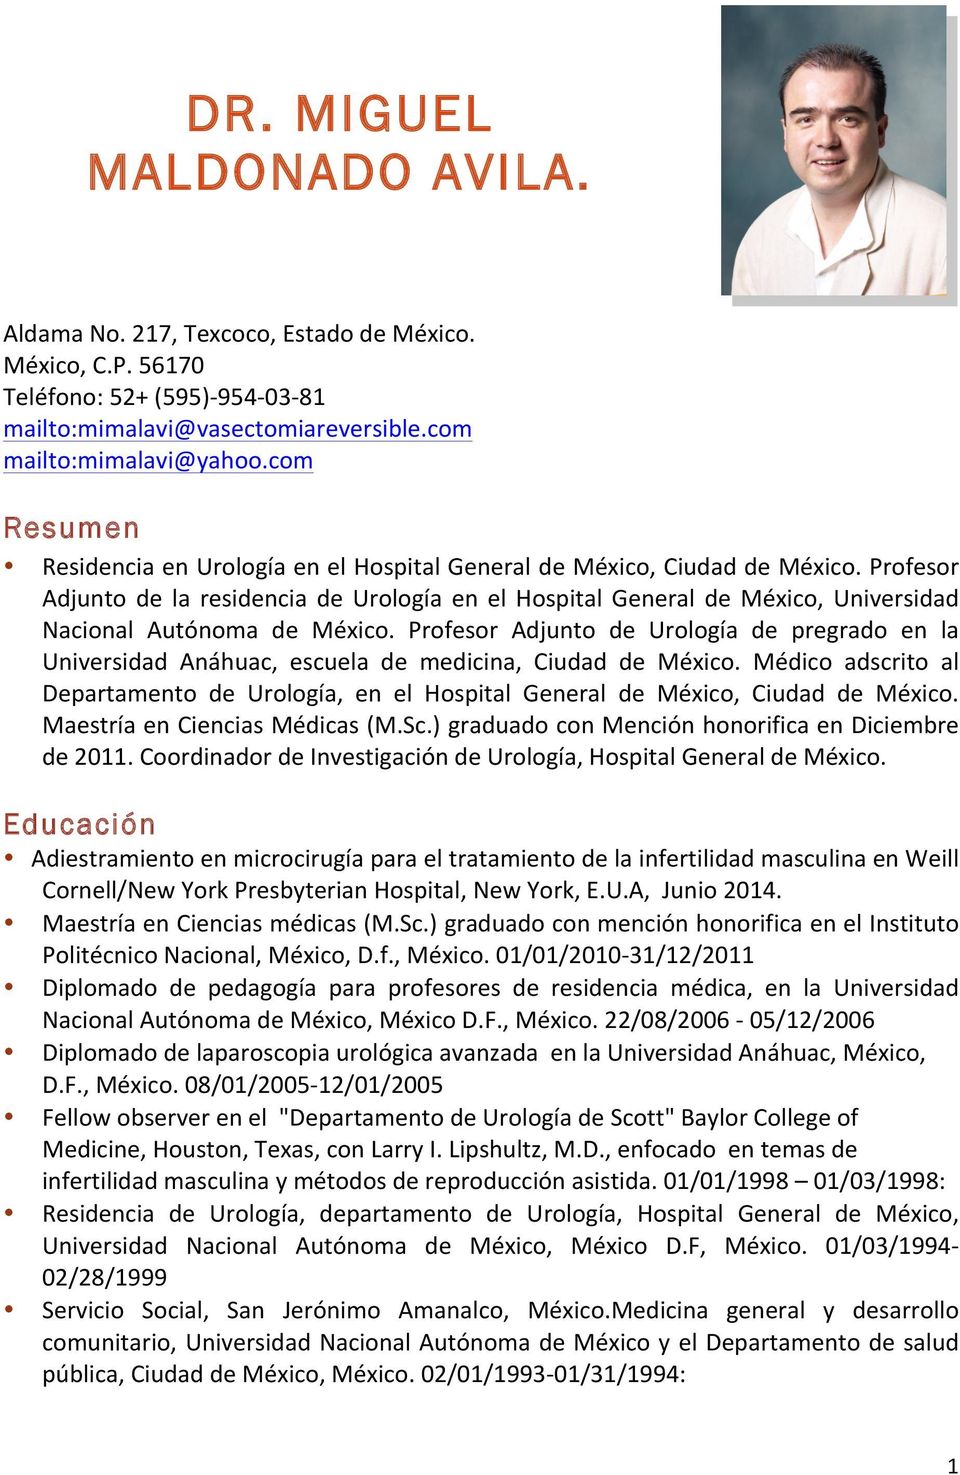 Profesor Adjunto de la residencia de Urología en el Hospital General de México, Universidad Nacional Autónoma de México.